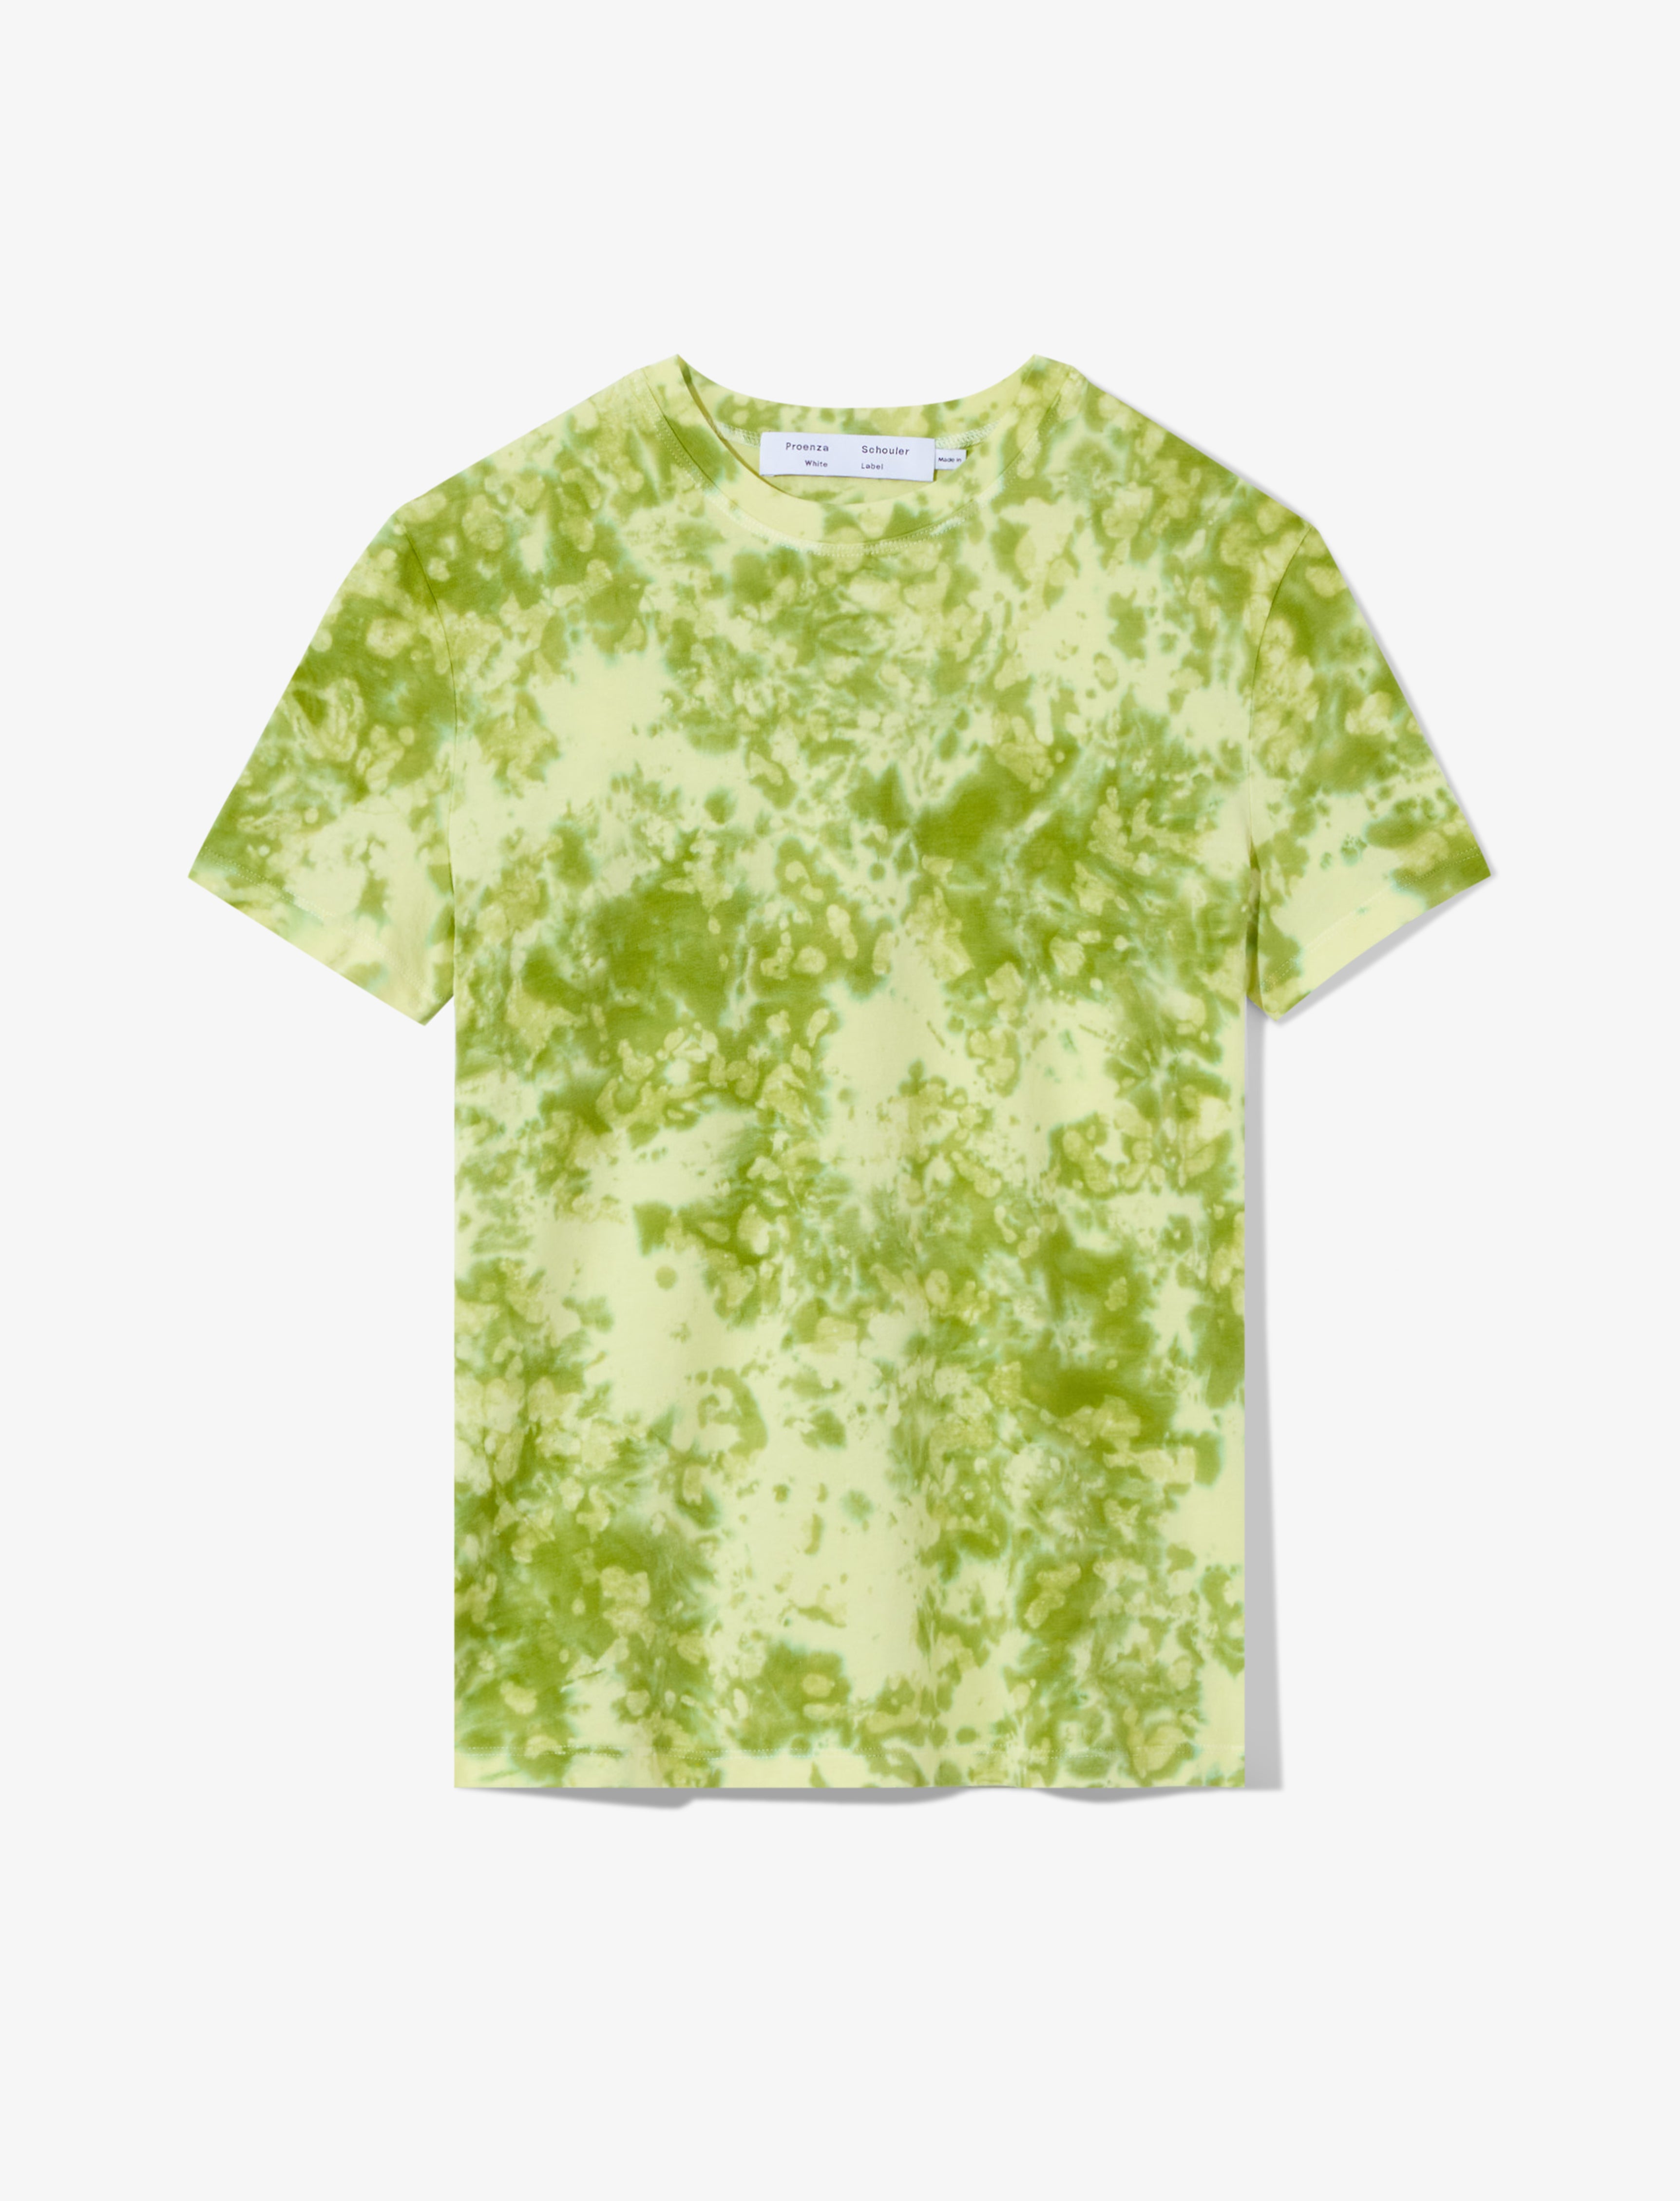 Proenza Tie Dye T-Shirt Green/Citron / S / WL2334226-JCT144ABST-396